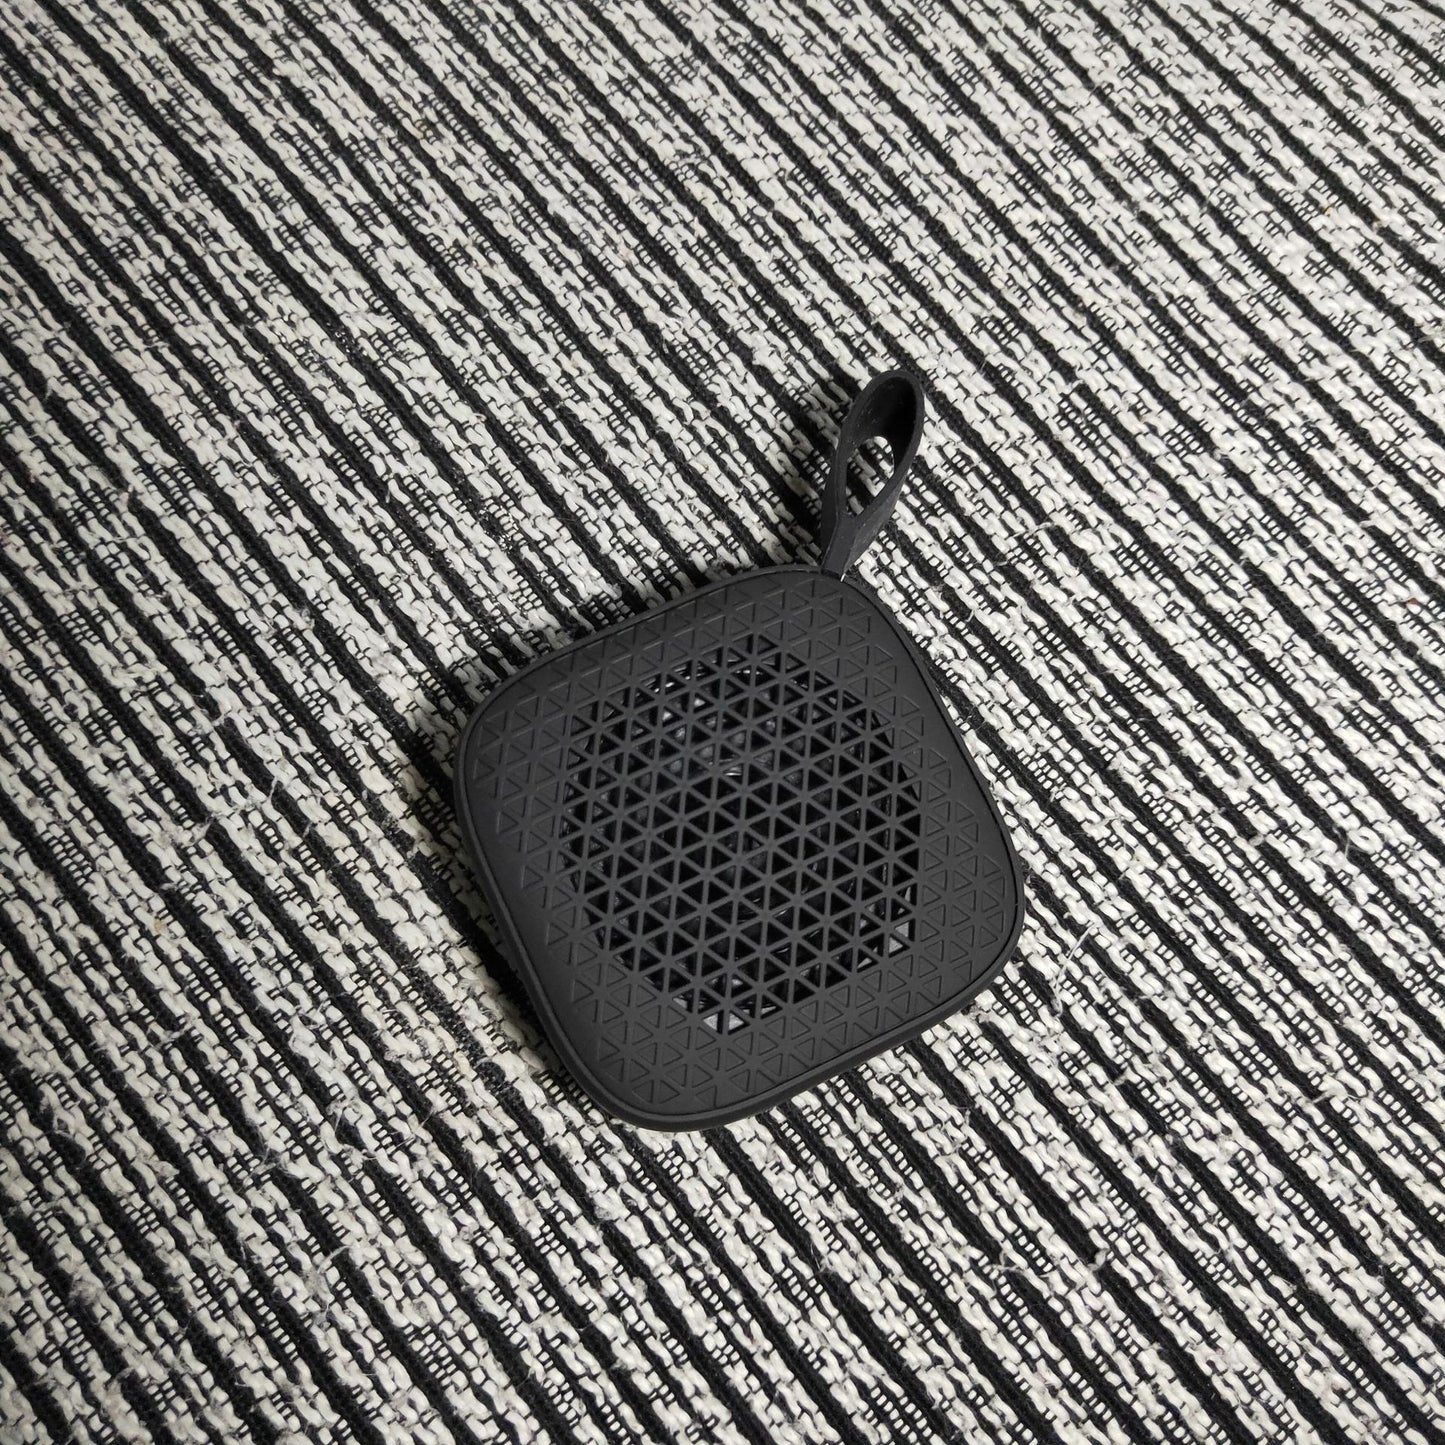 Portable Mini Bluetooth USB Speaker